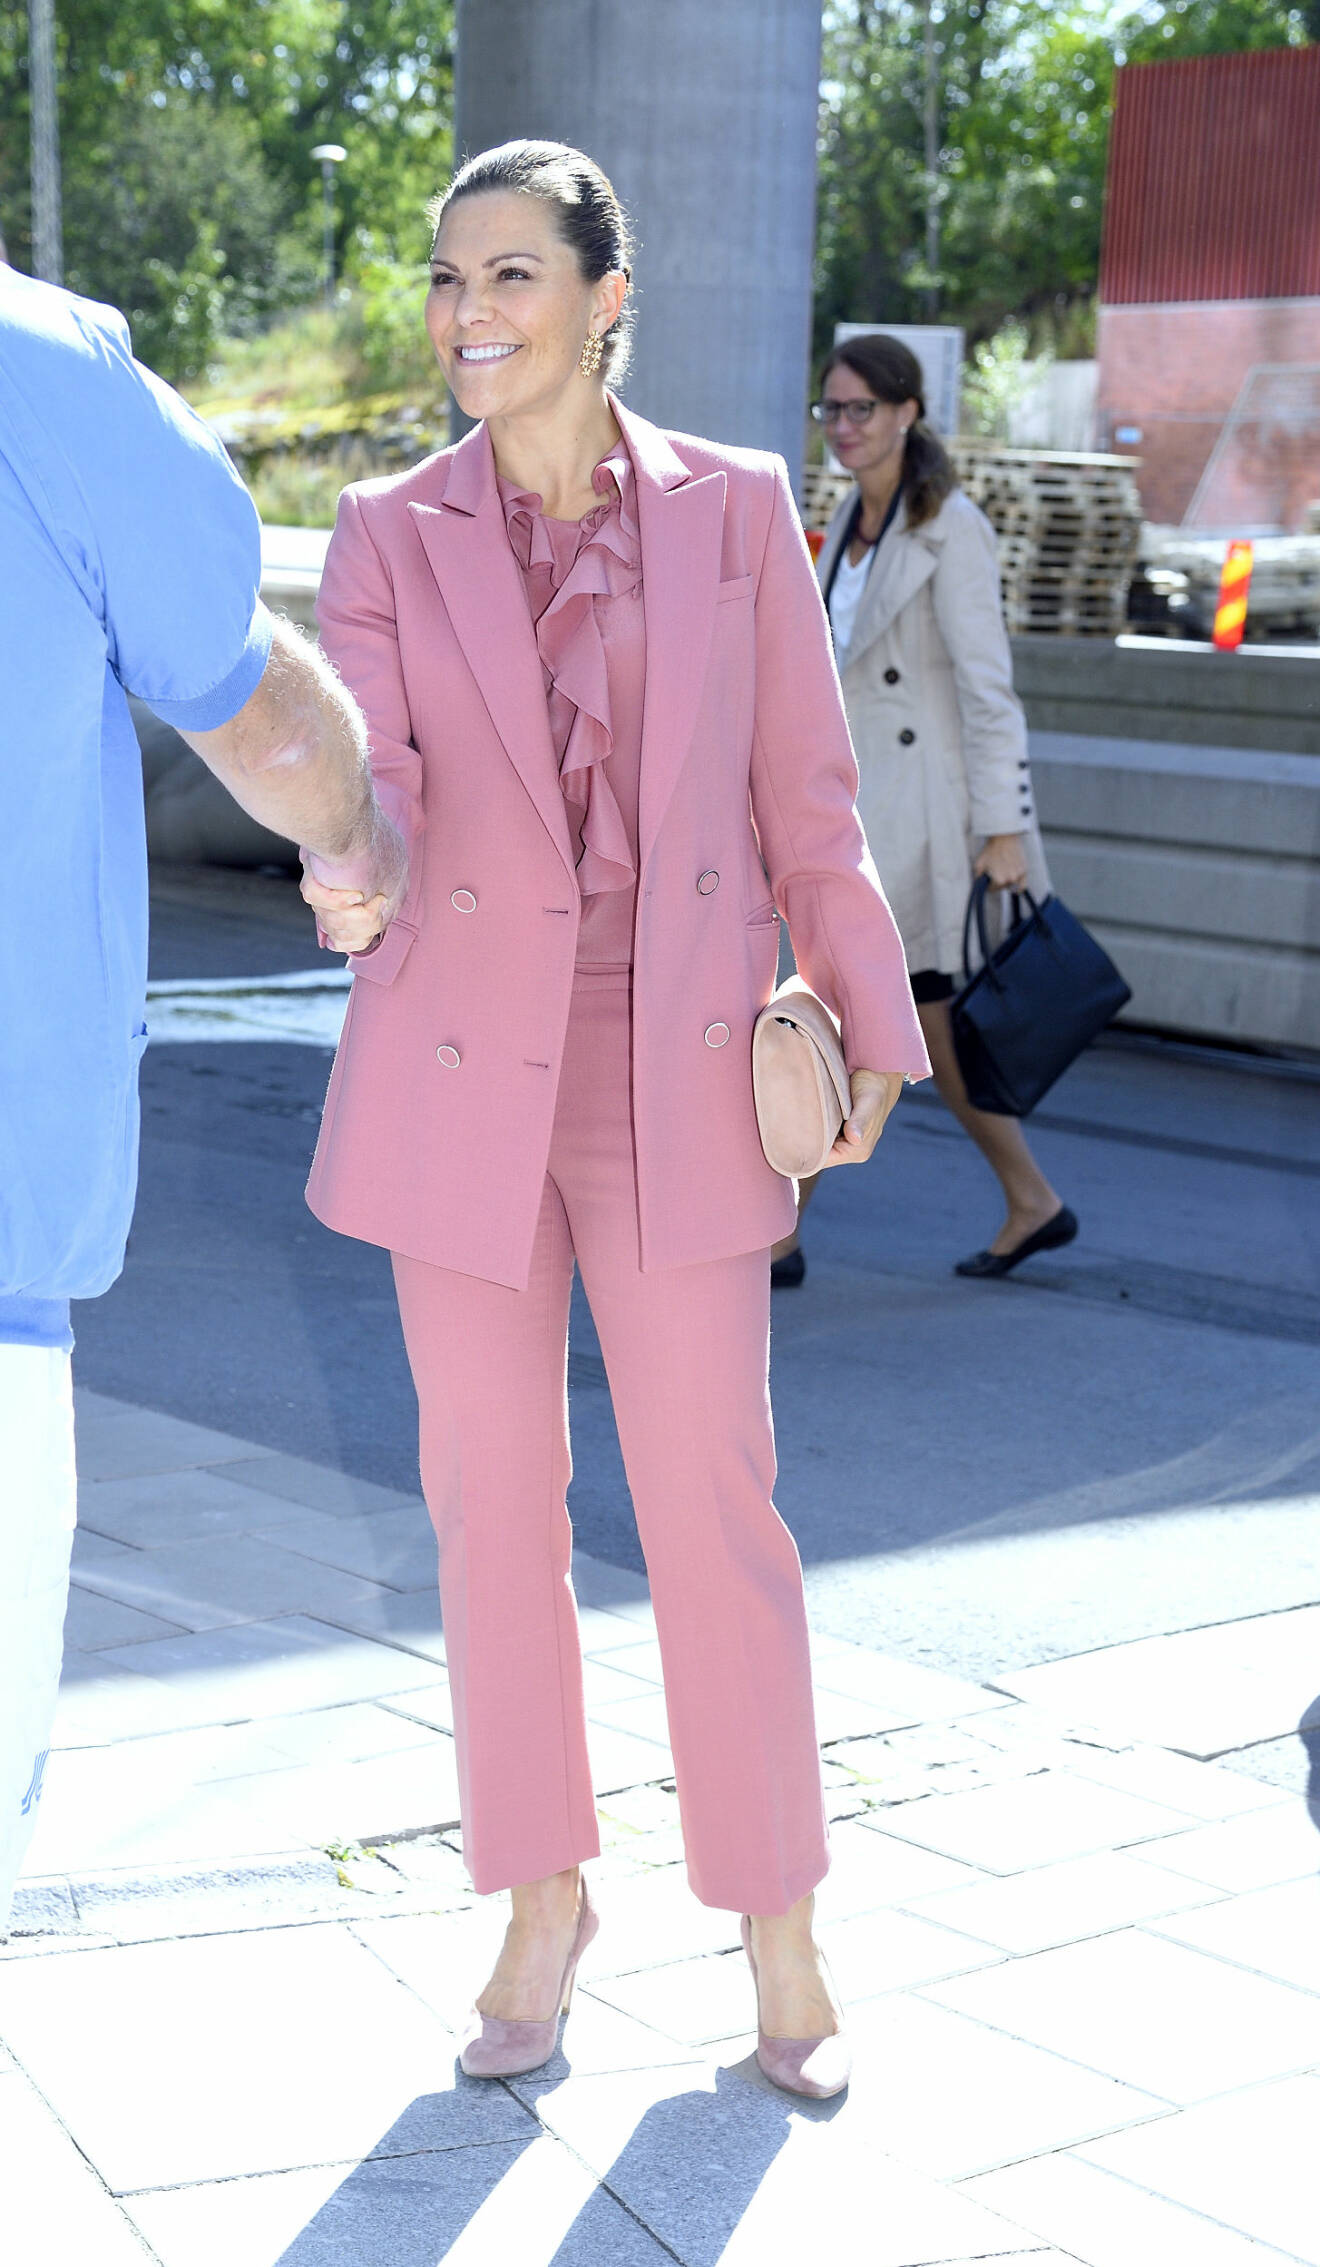 kronprinsessan victoria i rosa kostym på Karolinska sjukhuset i solna